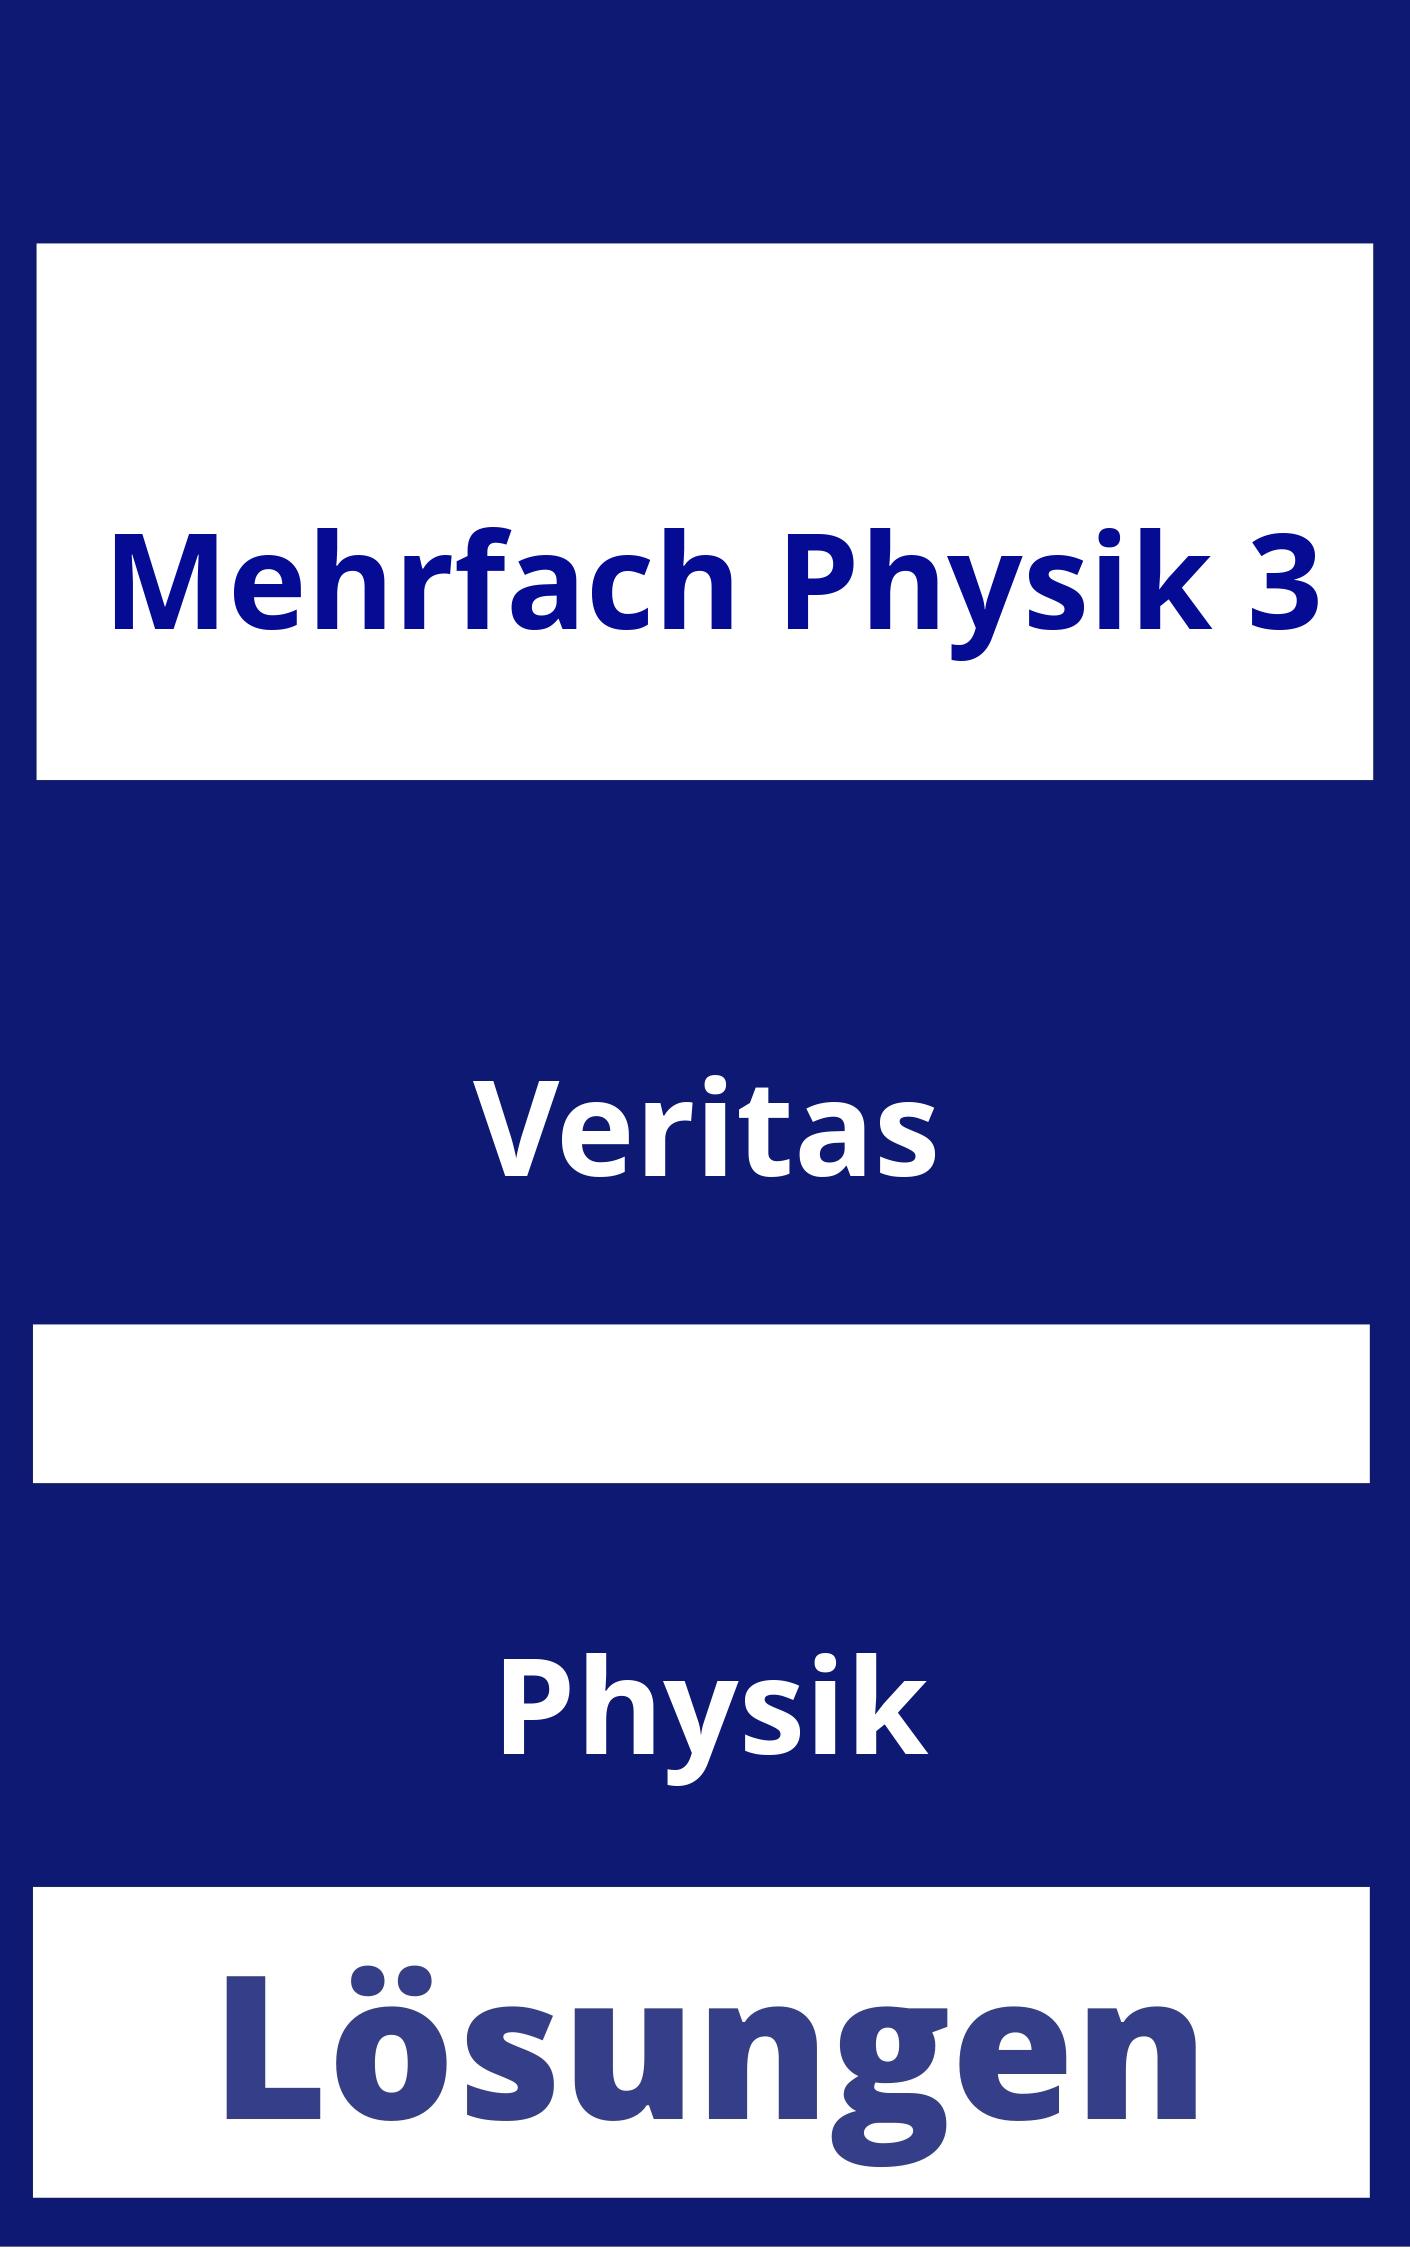 MEHRfach Physik 3 Lösungen PDF